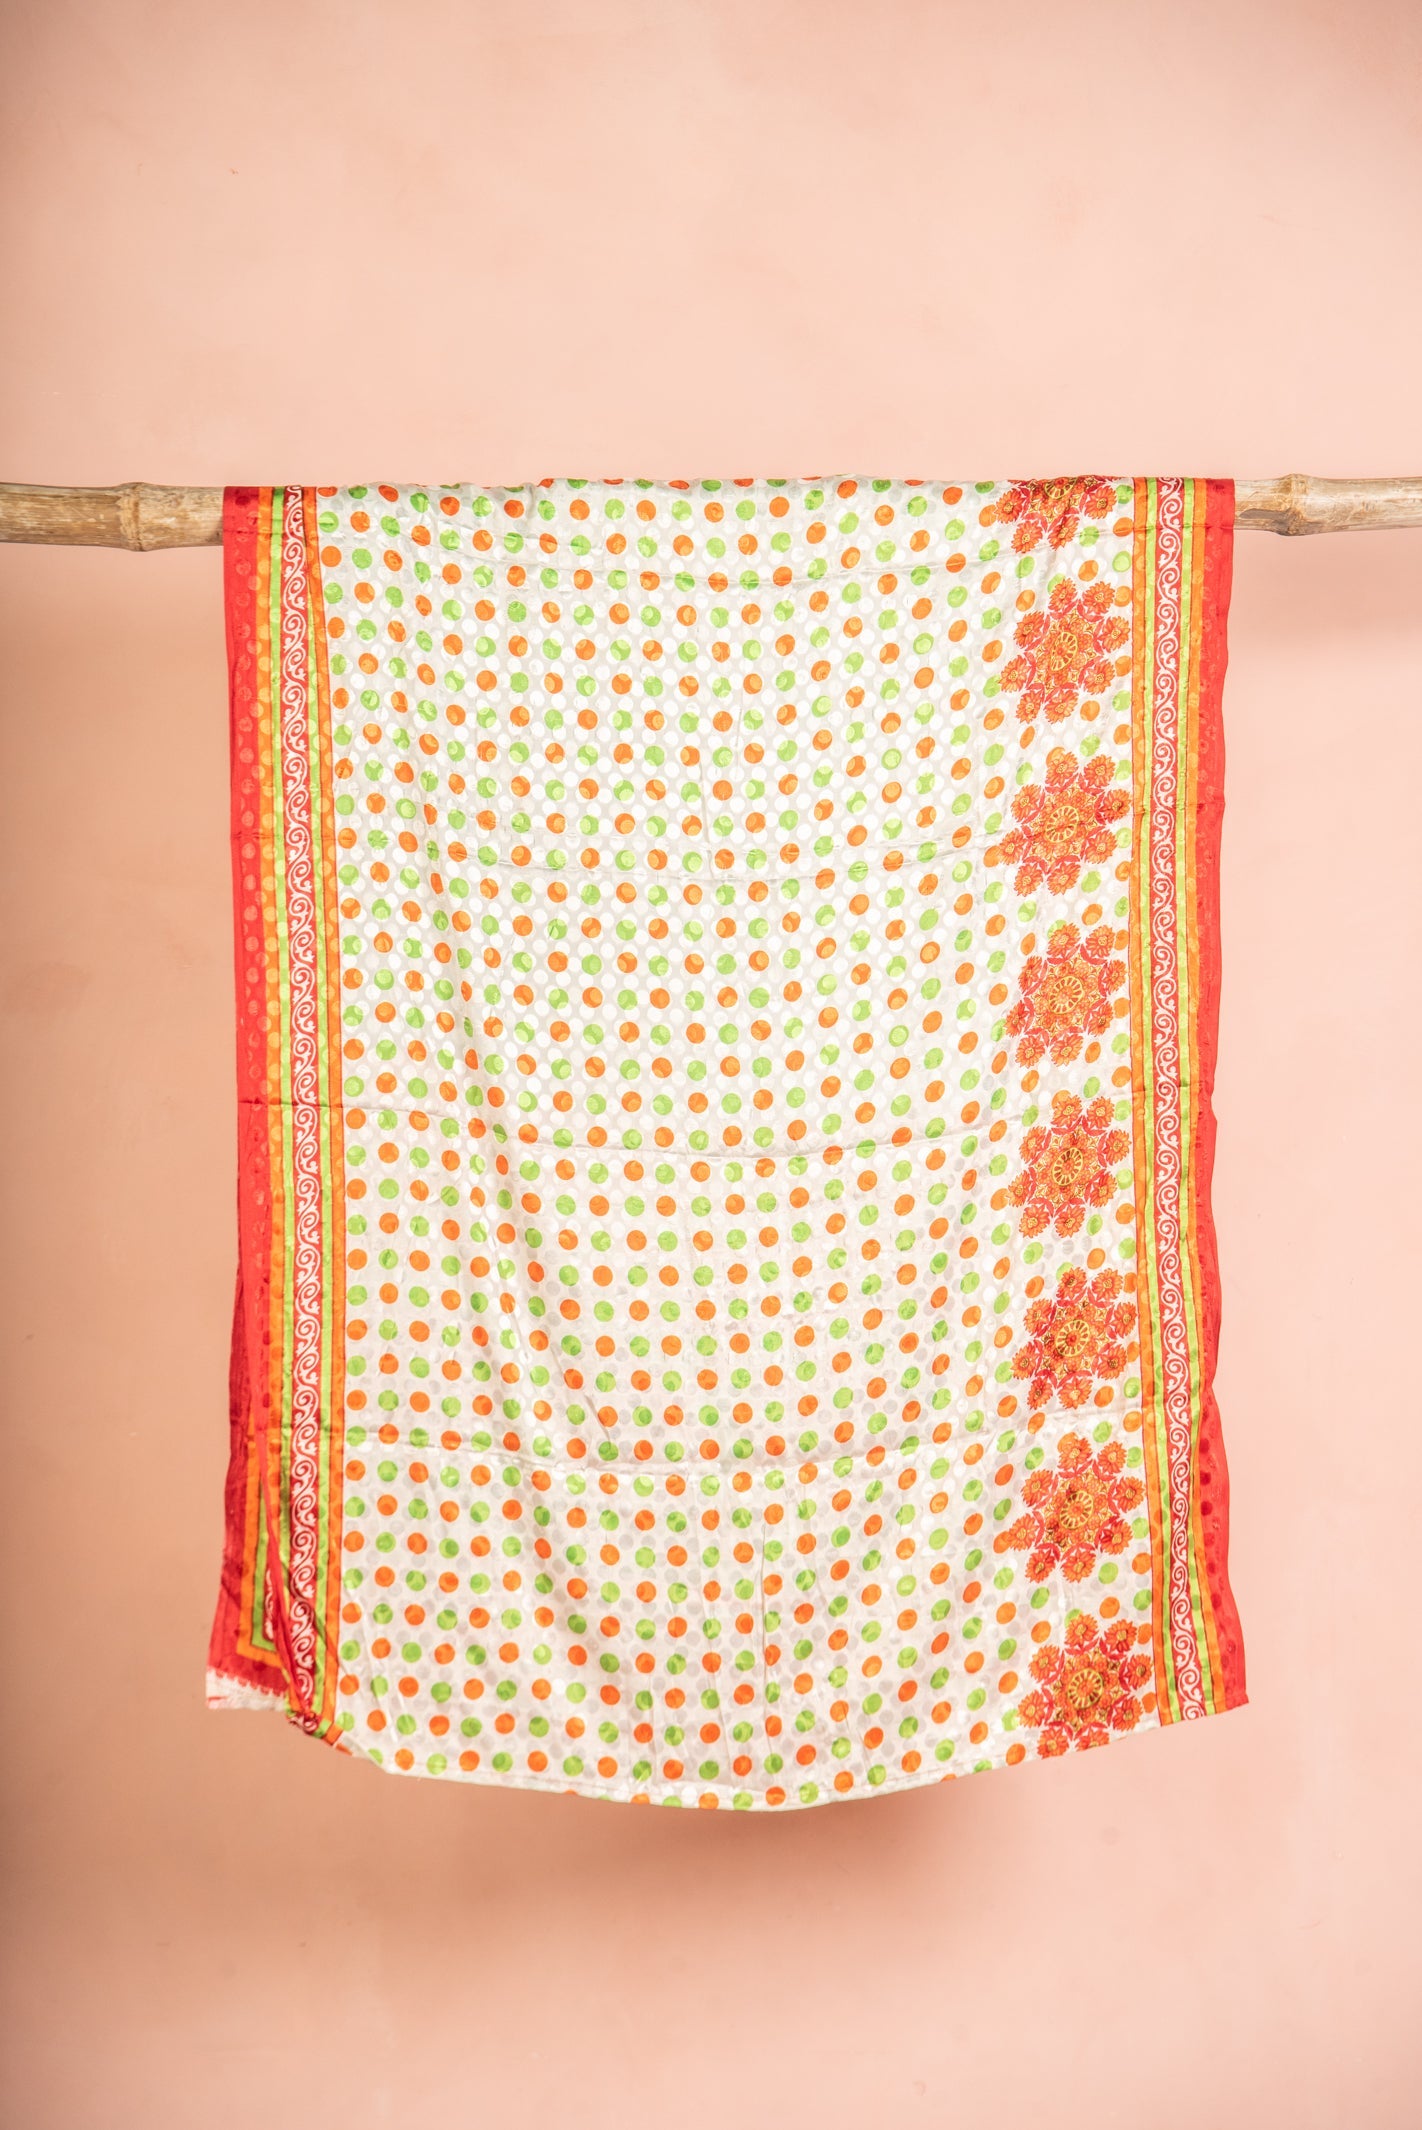 Vintage Rayon Sari - 5 Metres Long - 2407